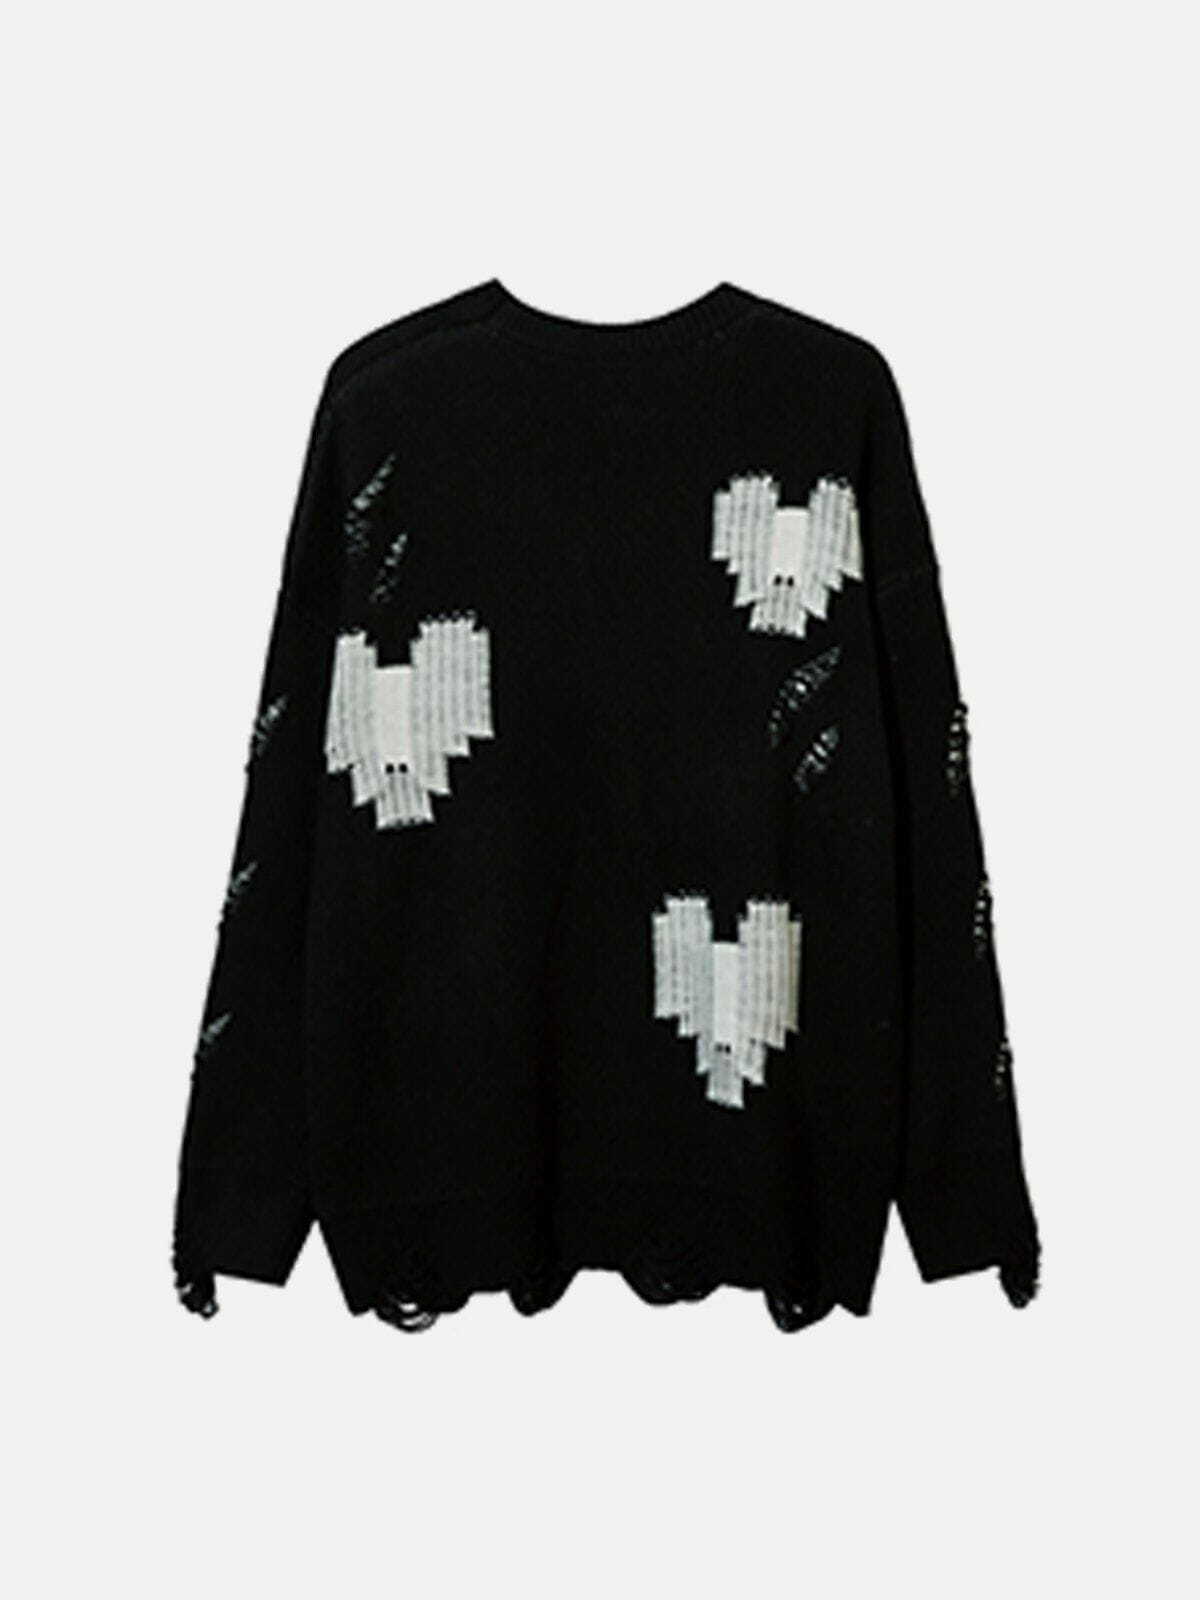 heart cutout sweater edgy broken hole design 8868